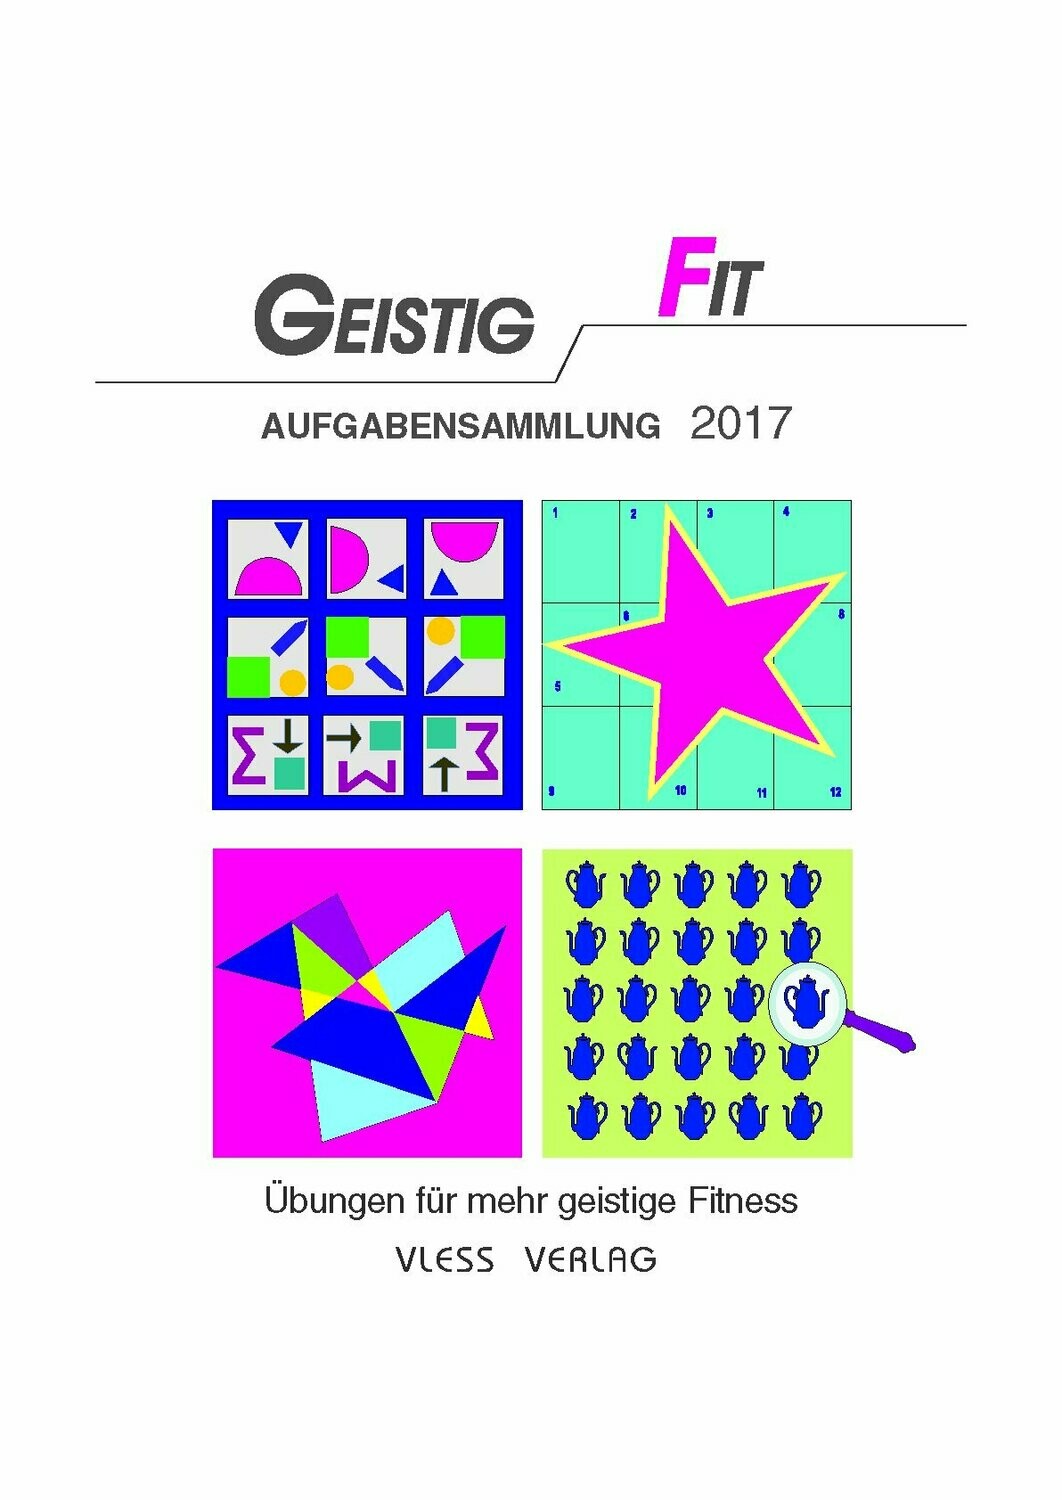 GEISTIG FIT Aufgabensammlung 2017